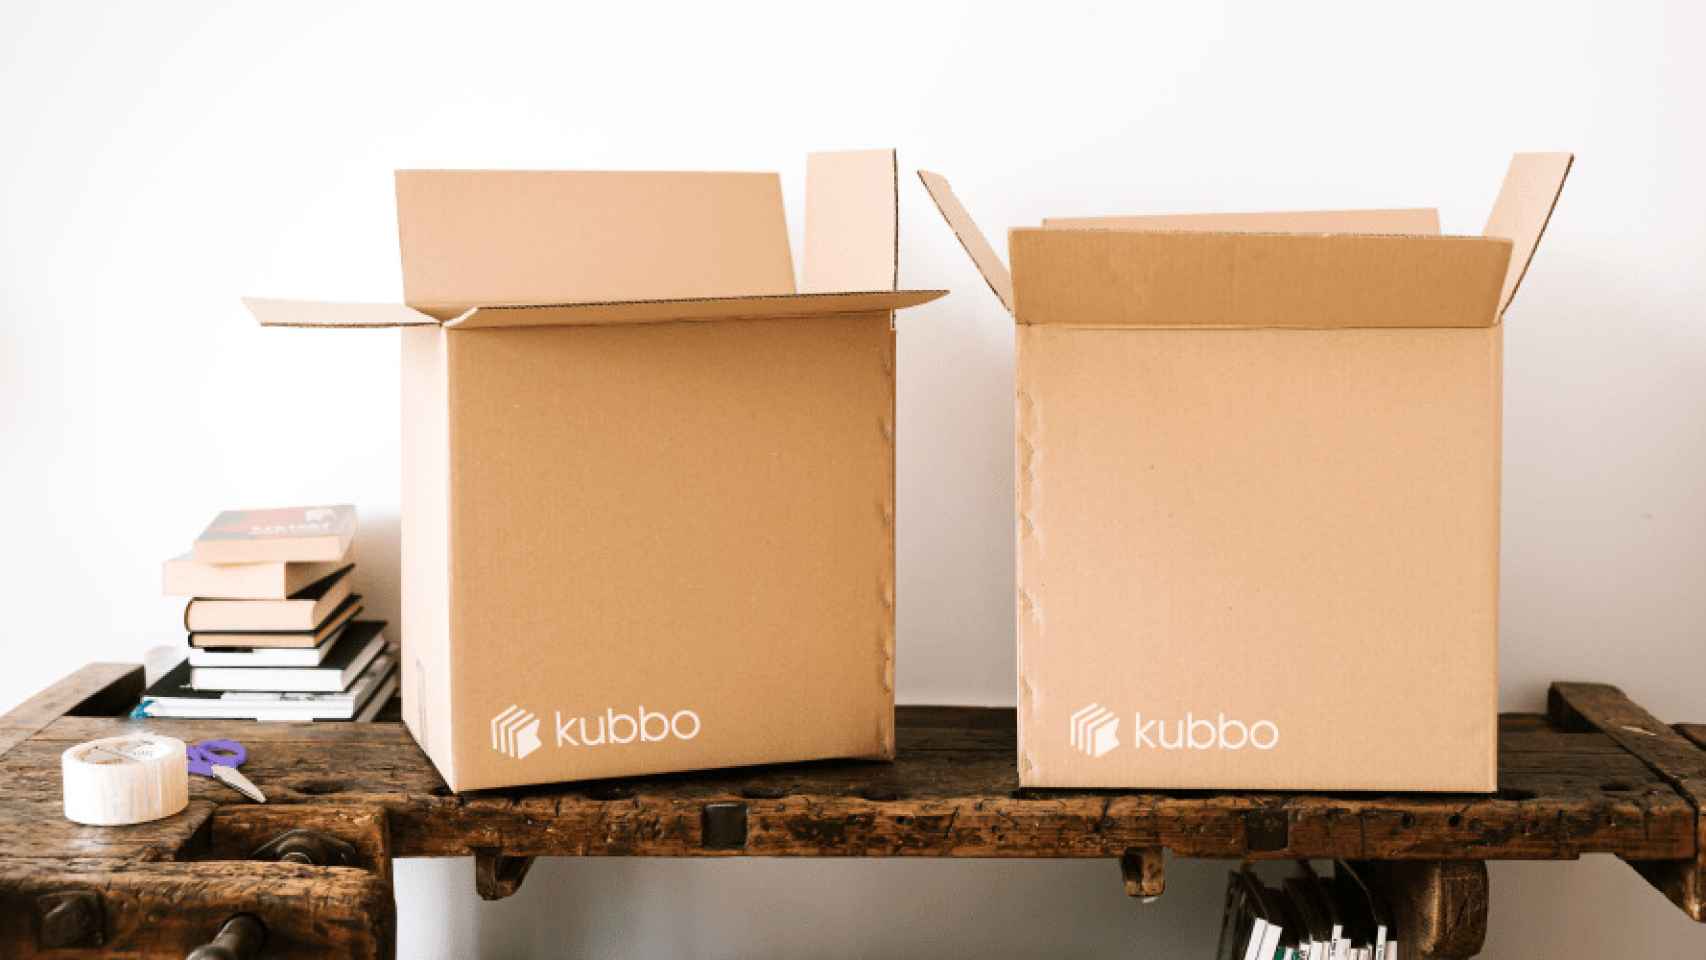 La tecnología de Kubbo se incorpora fácilmente a las plataformas de 'ecommerce' y revoluciona el sector al permitir a las pymes centrarse en escalar sus negocios y atraer a nuevos clientes.